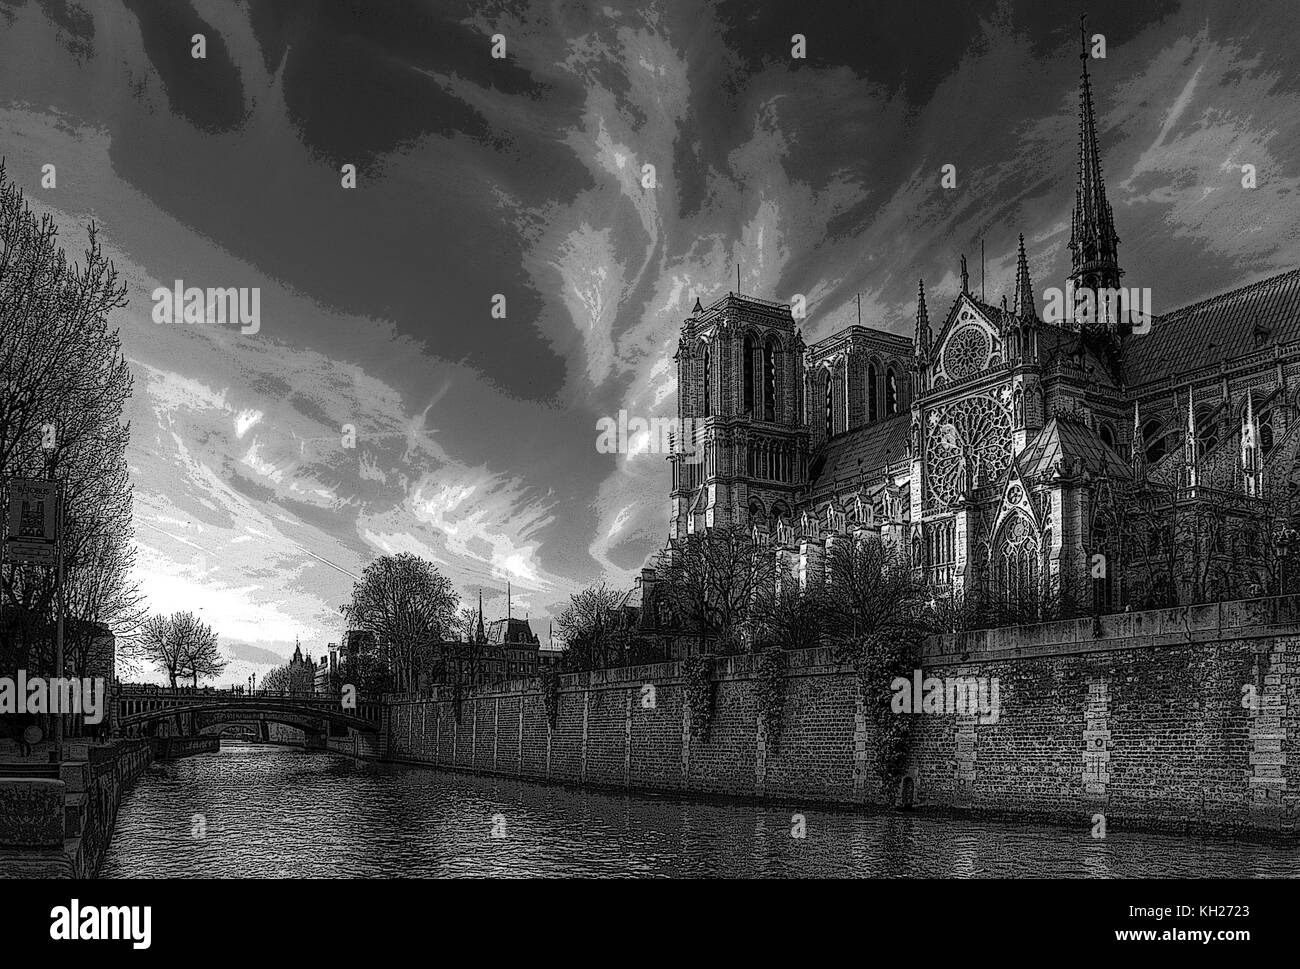 On the Seine at dusk - Notre Dame de Paris. Digital black & white painting Stock Photo